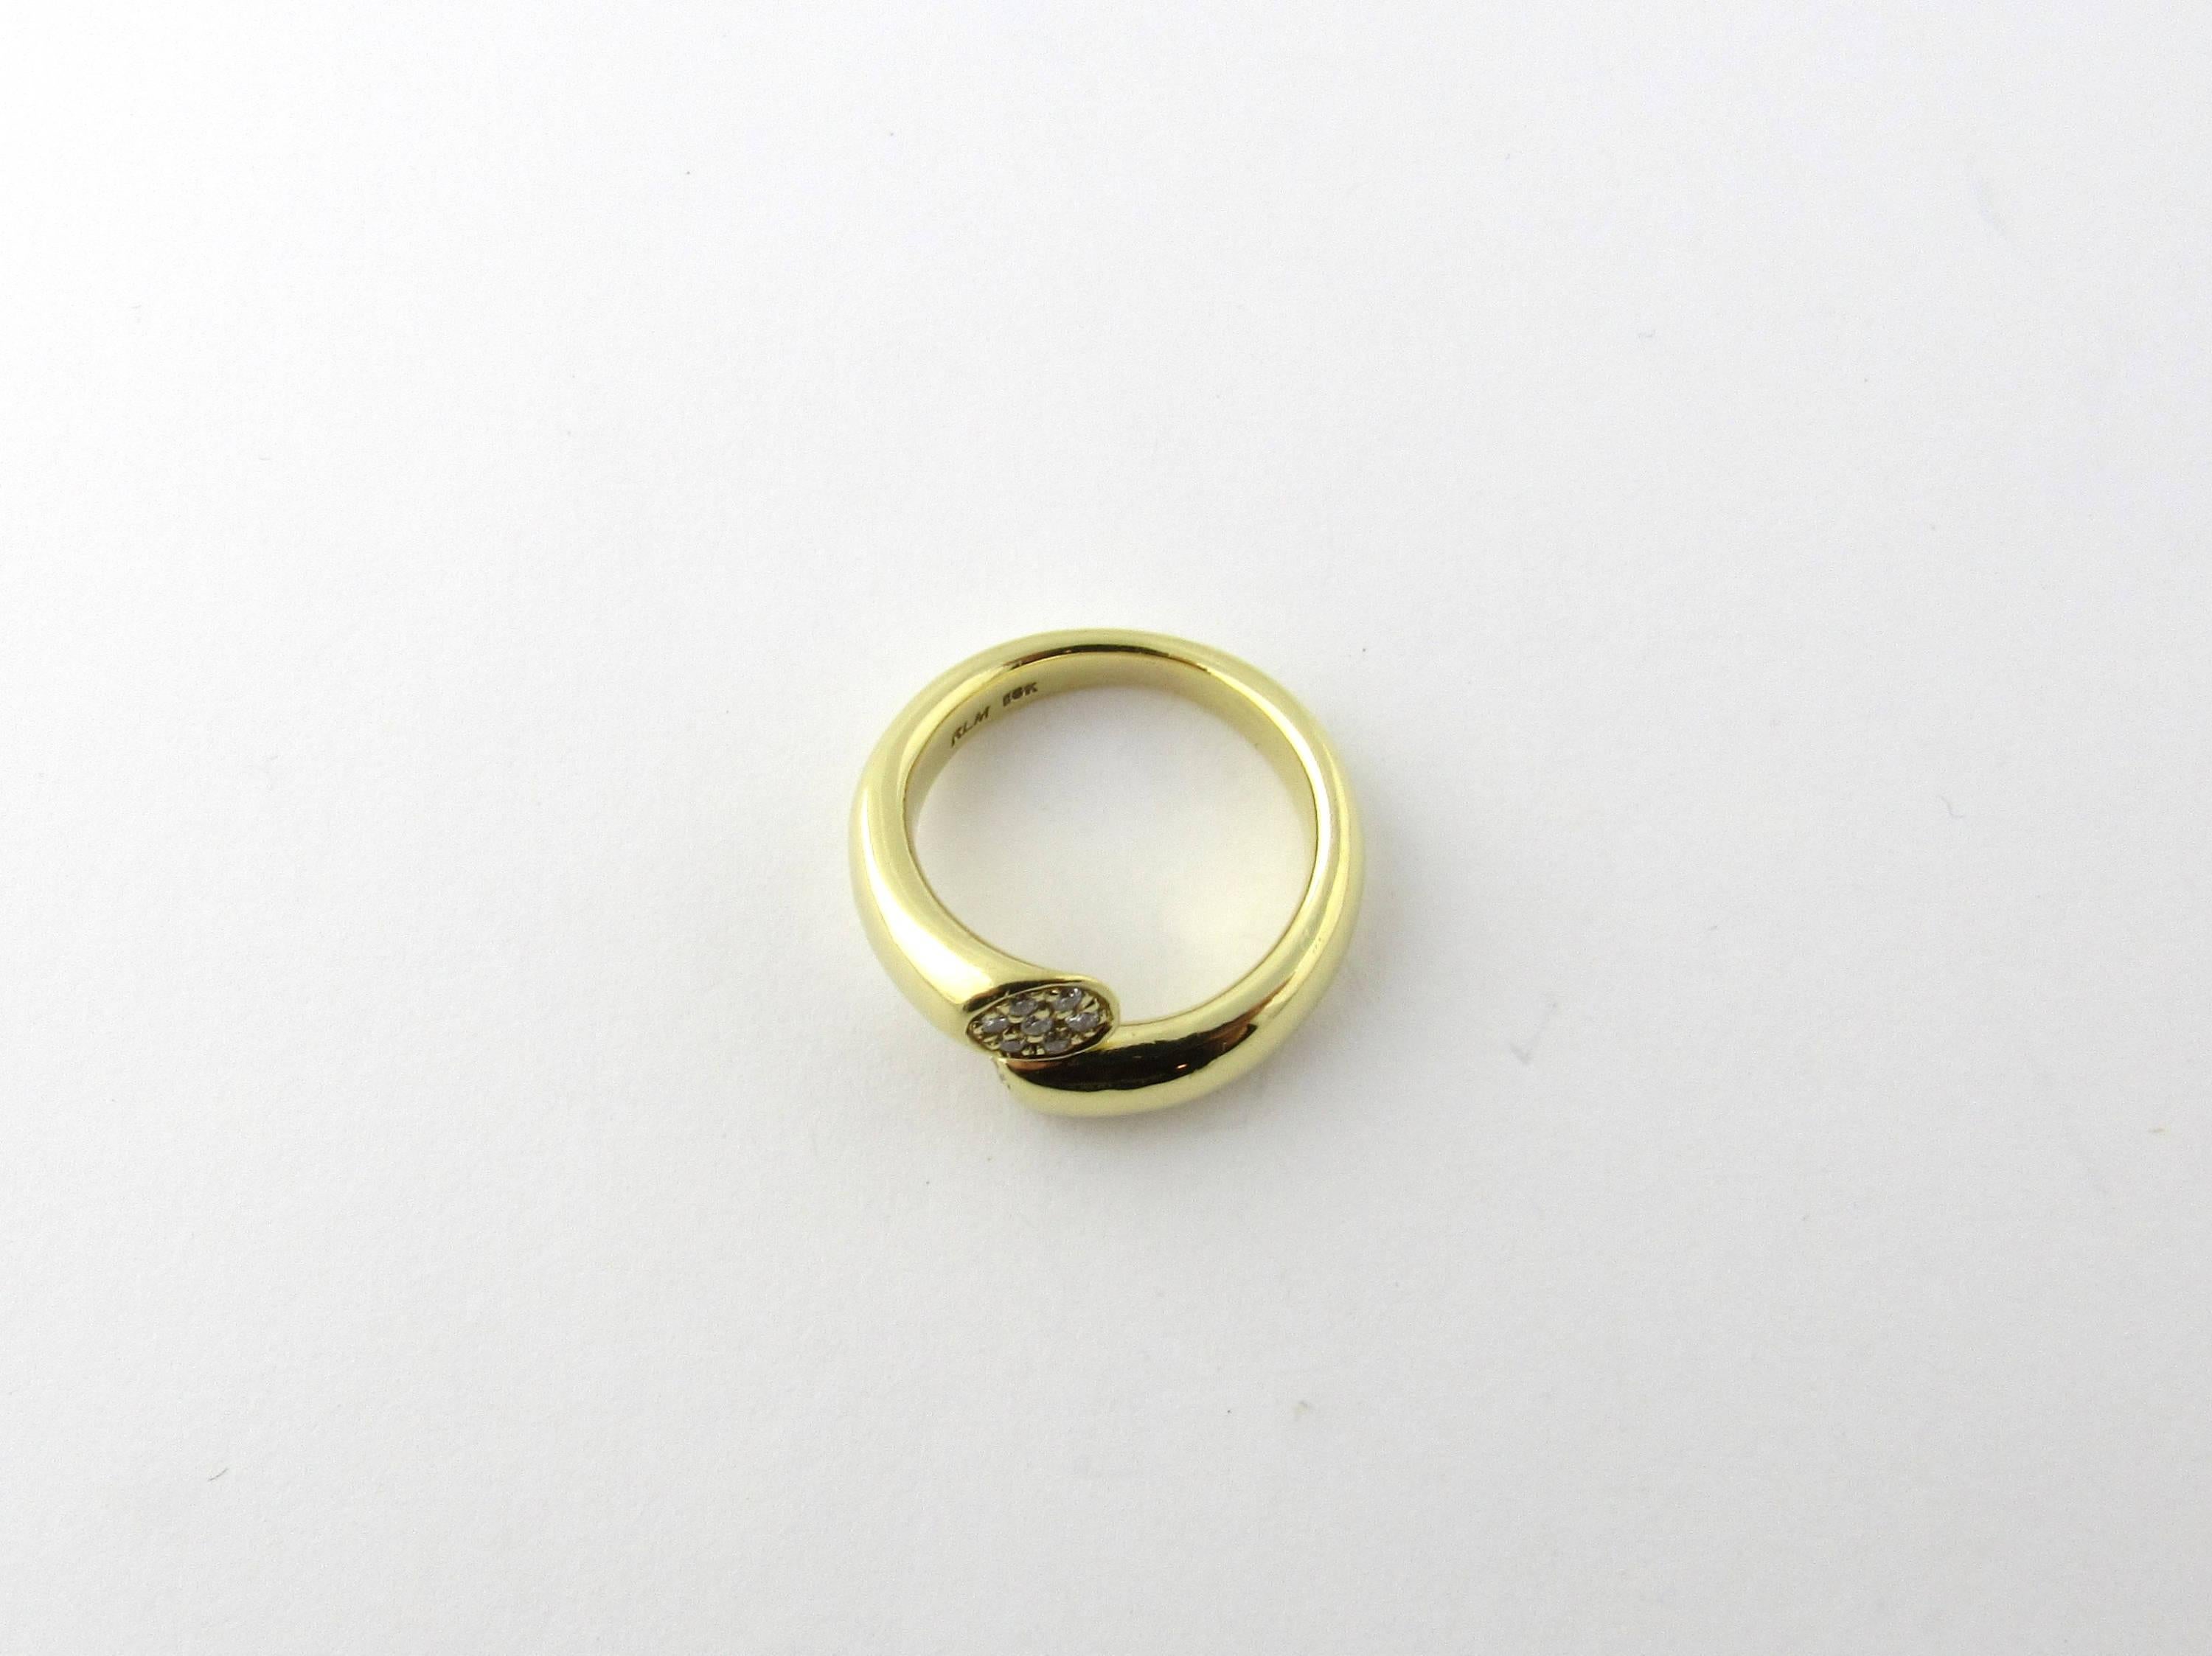 Women's 18 Karat Yellow Gold and Diamond Ring